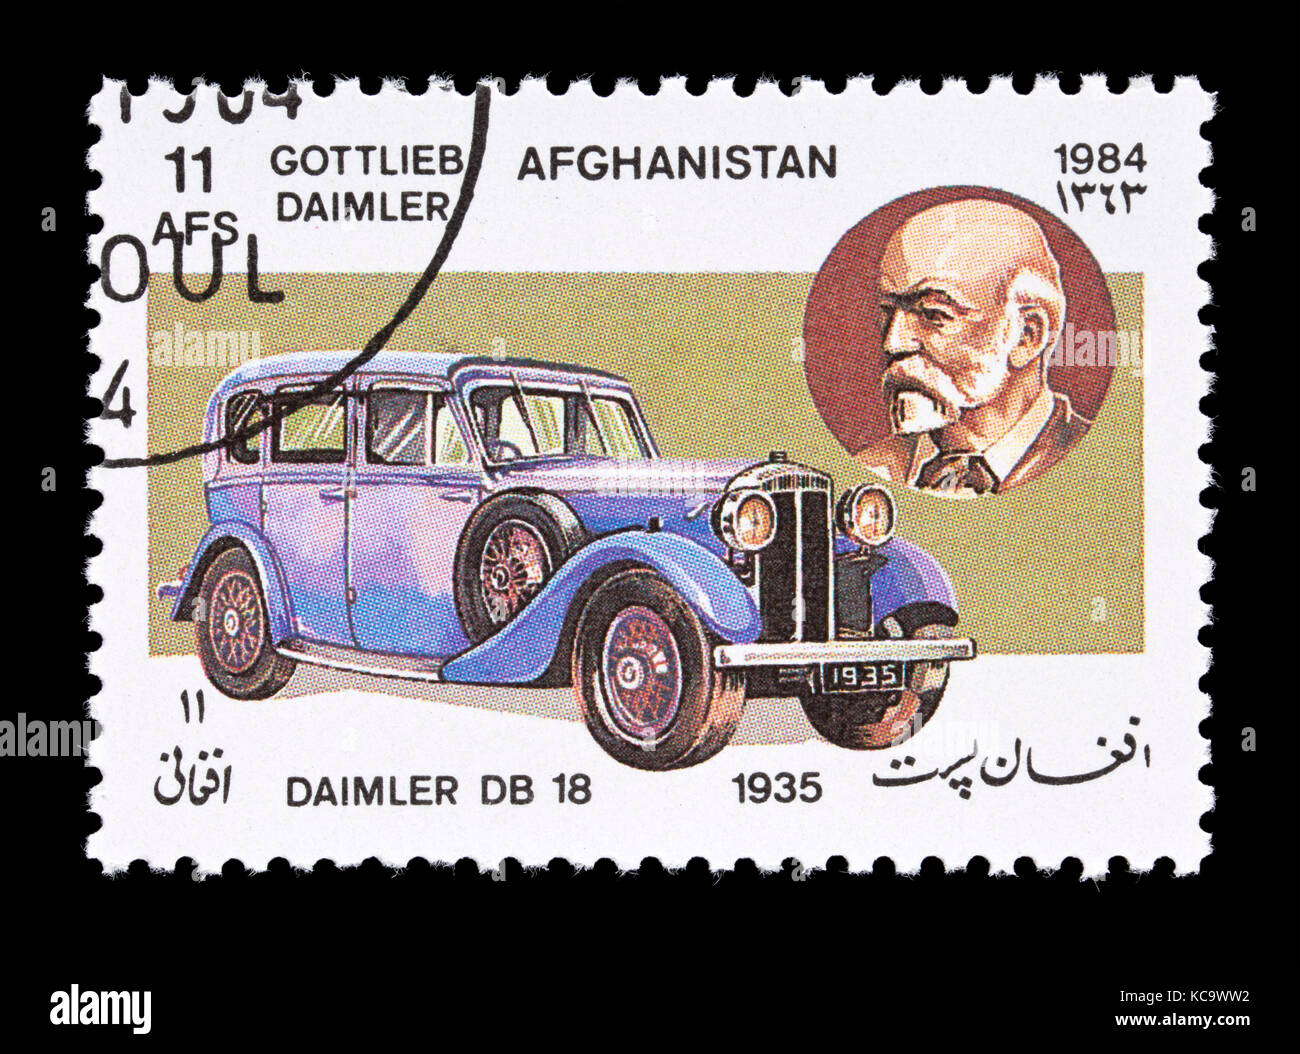 Timbre-poste d'Afghanistan représentant Gottlieb Daimler et un 1935 automobile Daimler-Benz. Banque D'Images